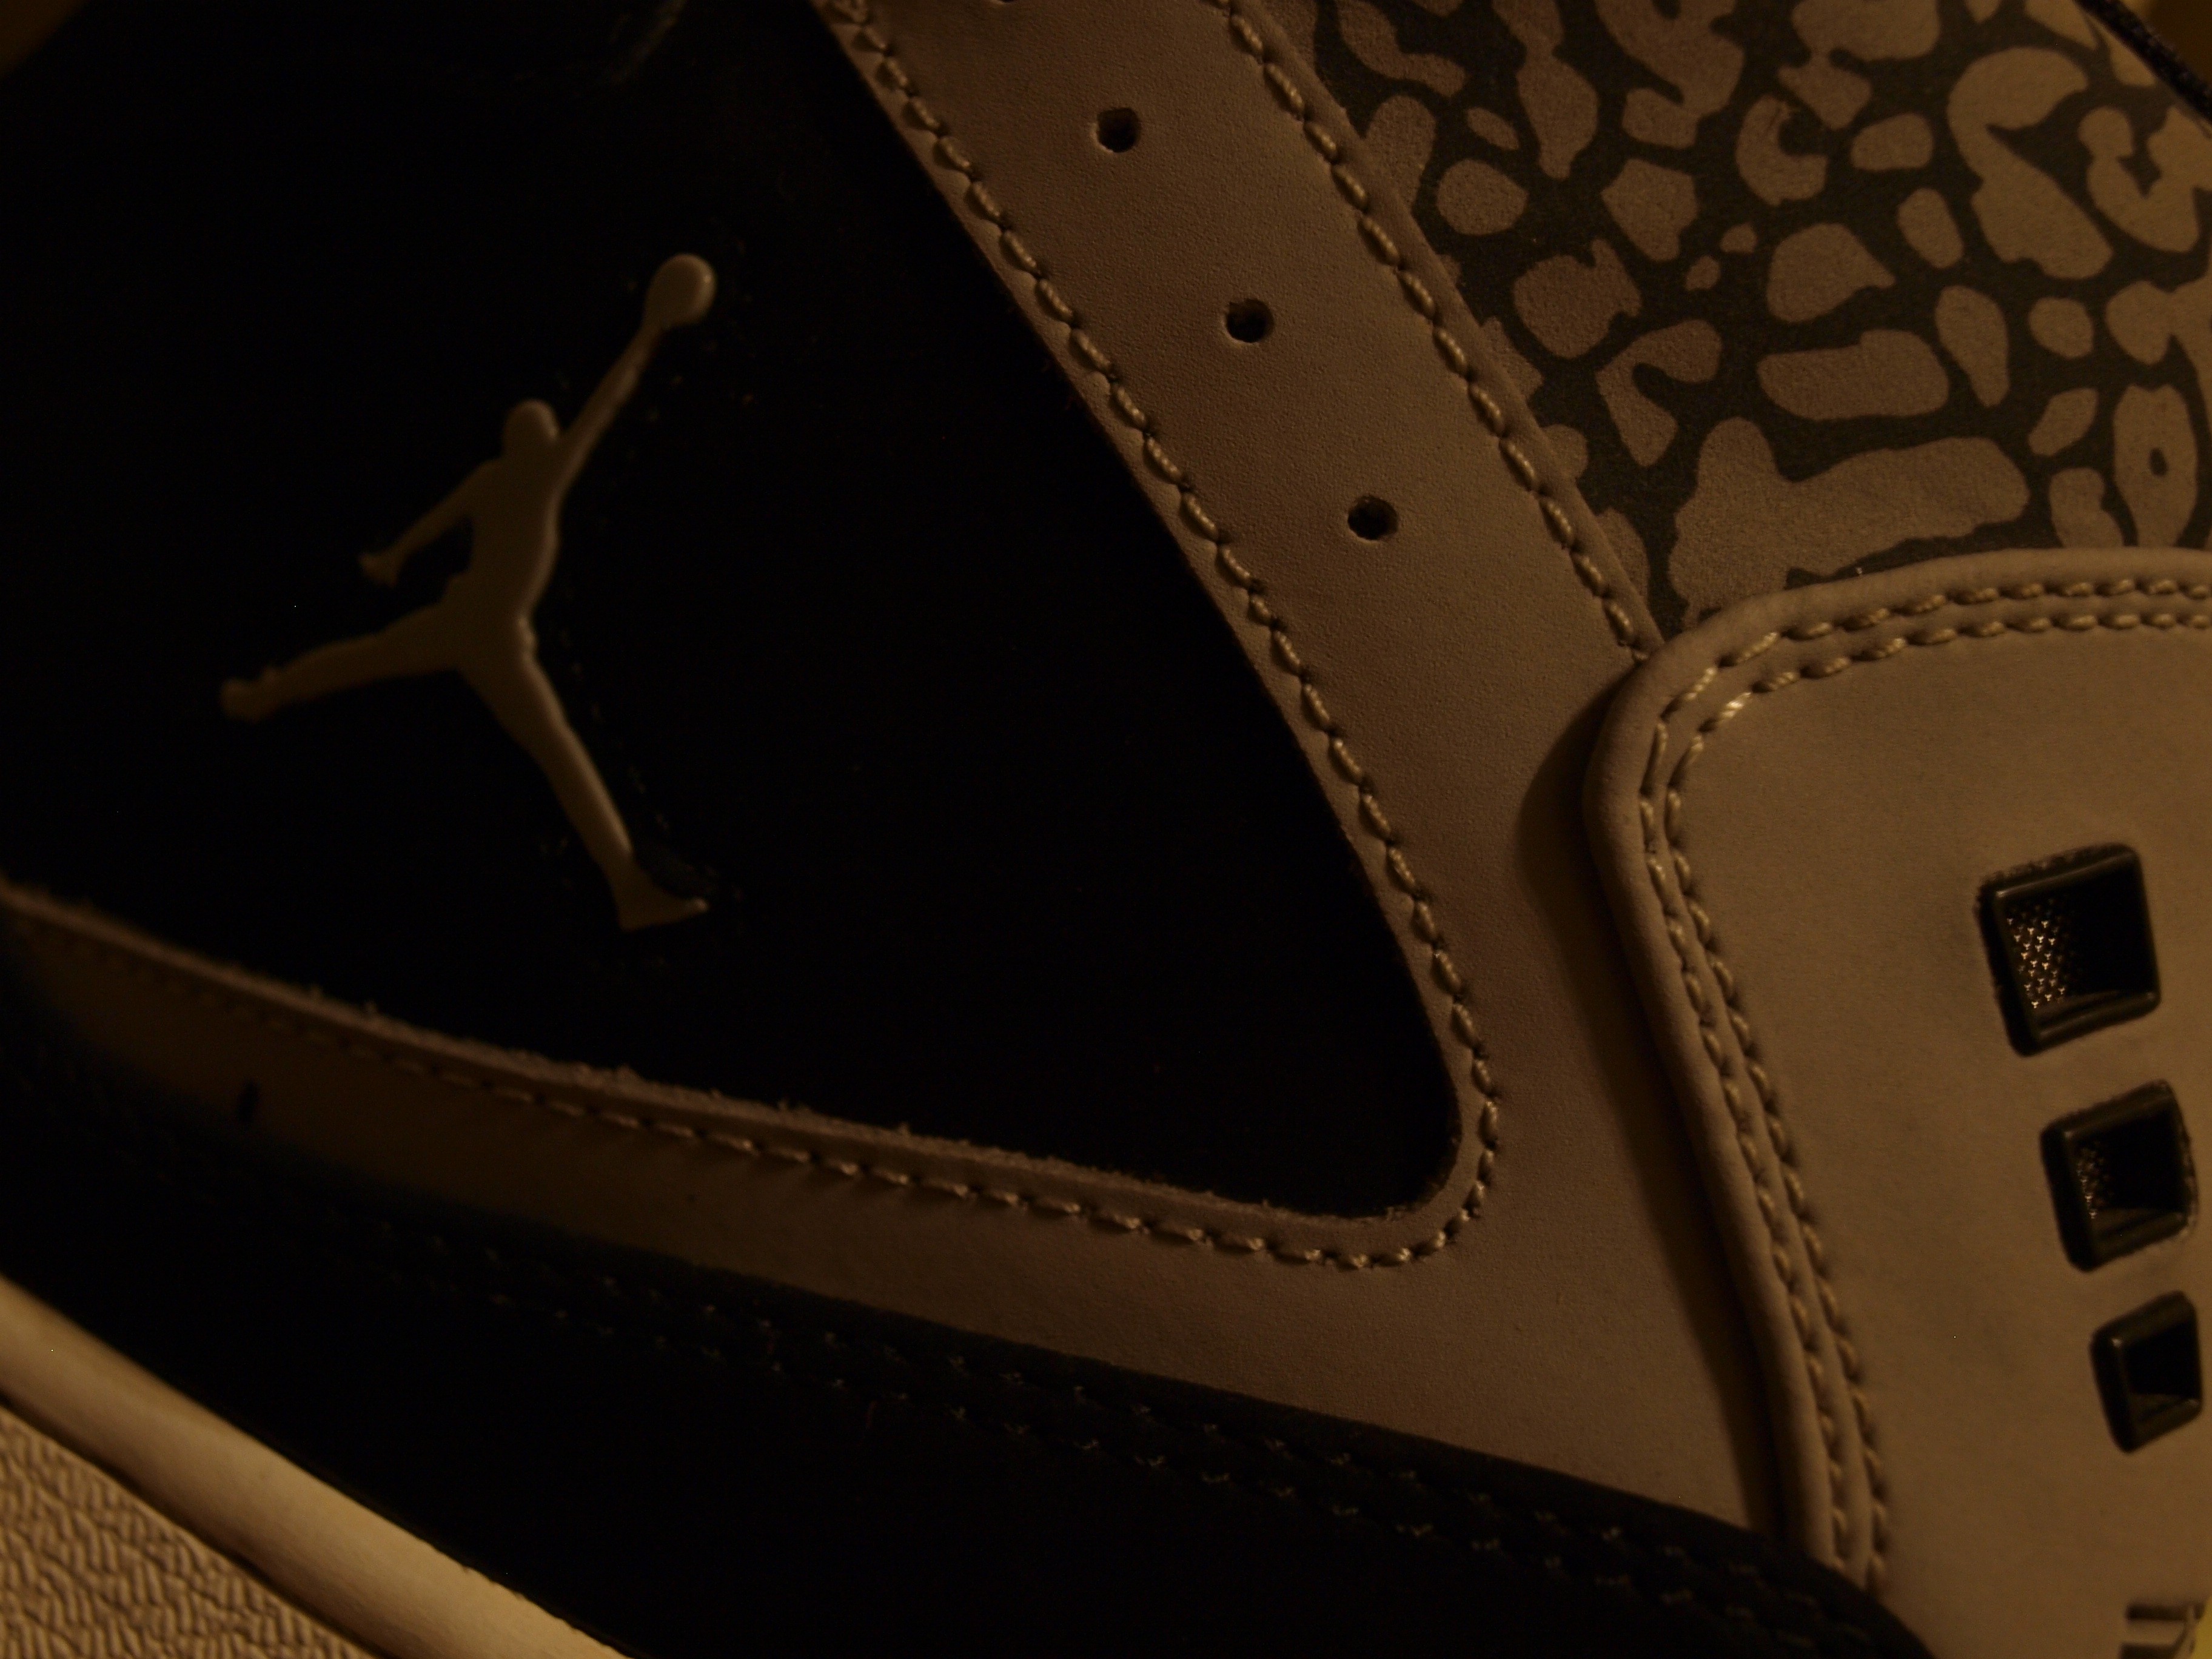 General 3648x2736 Air Jordan shoes macro brand